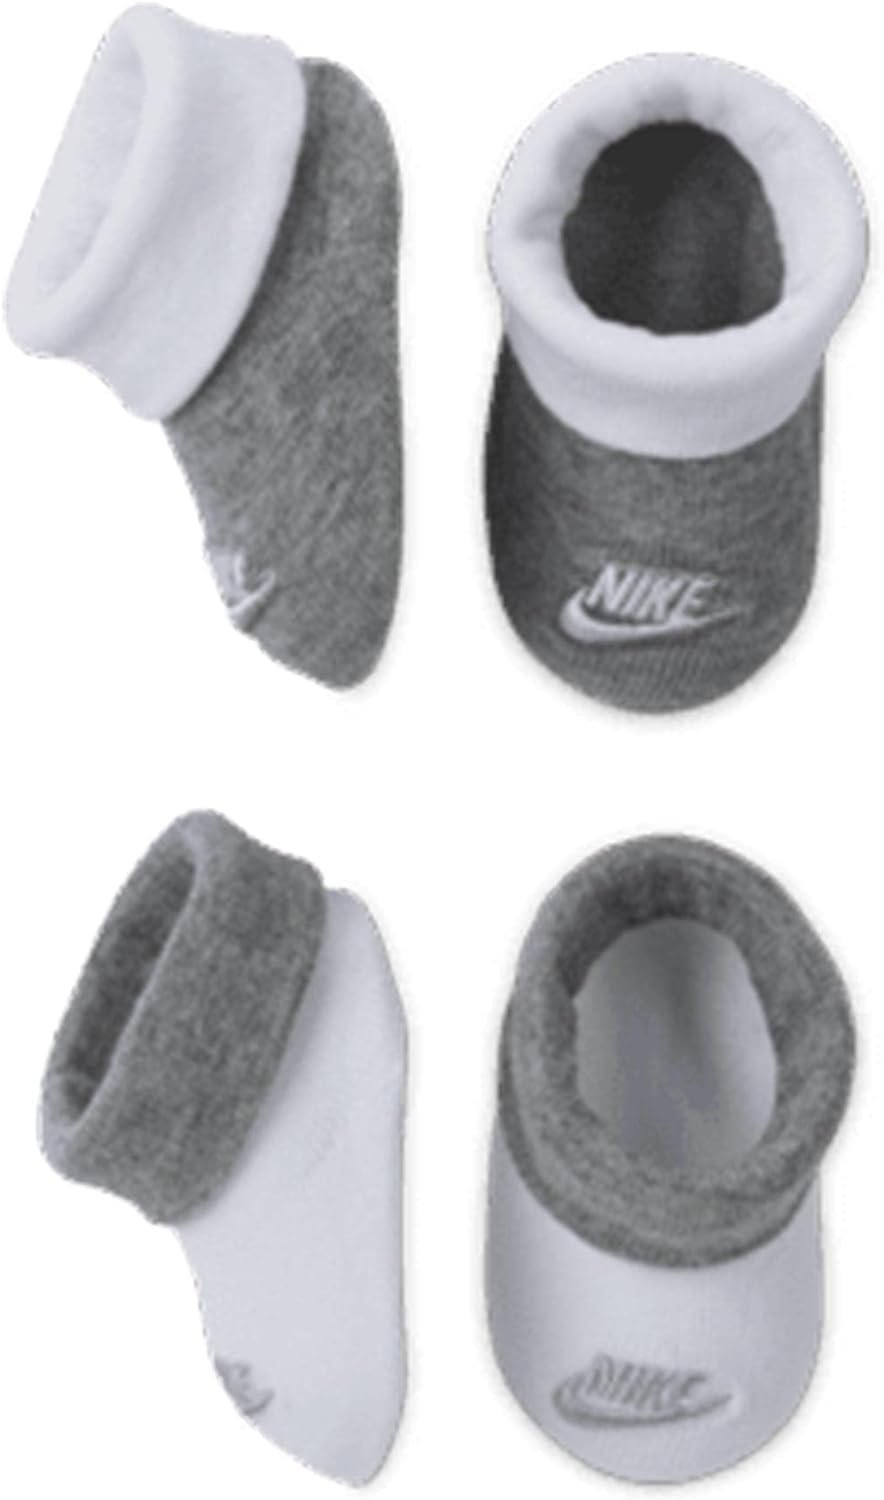 Nike Baby Boys 2-Pack Bootie Socks